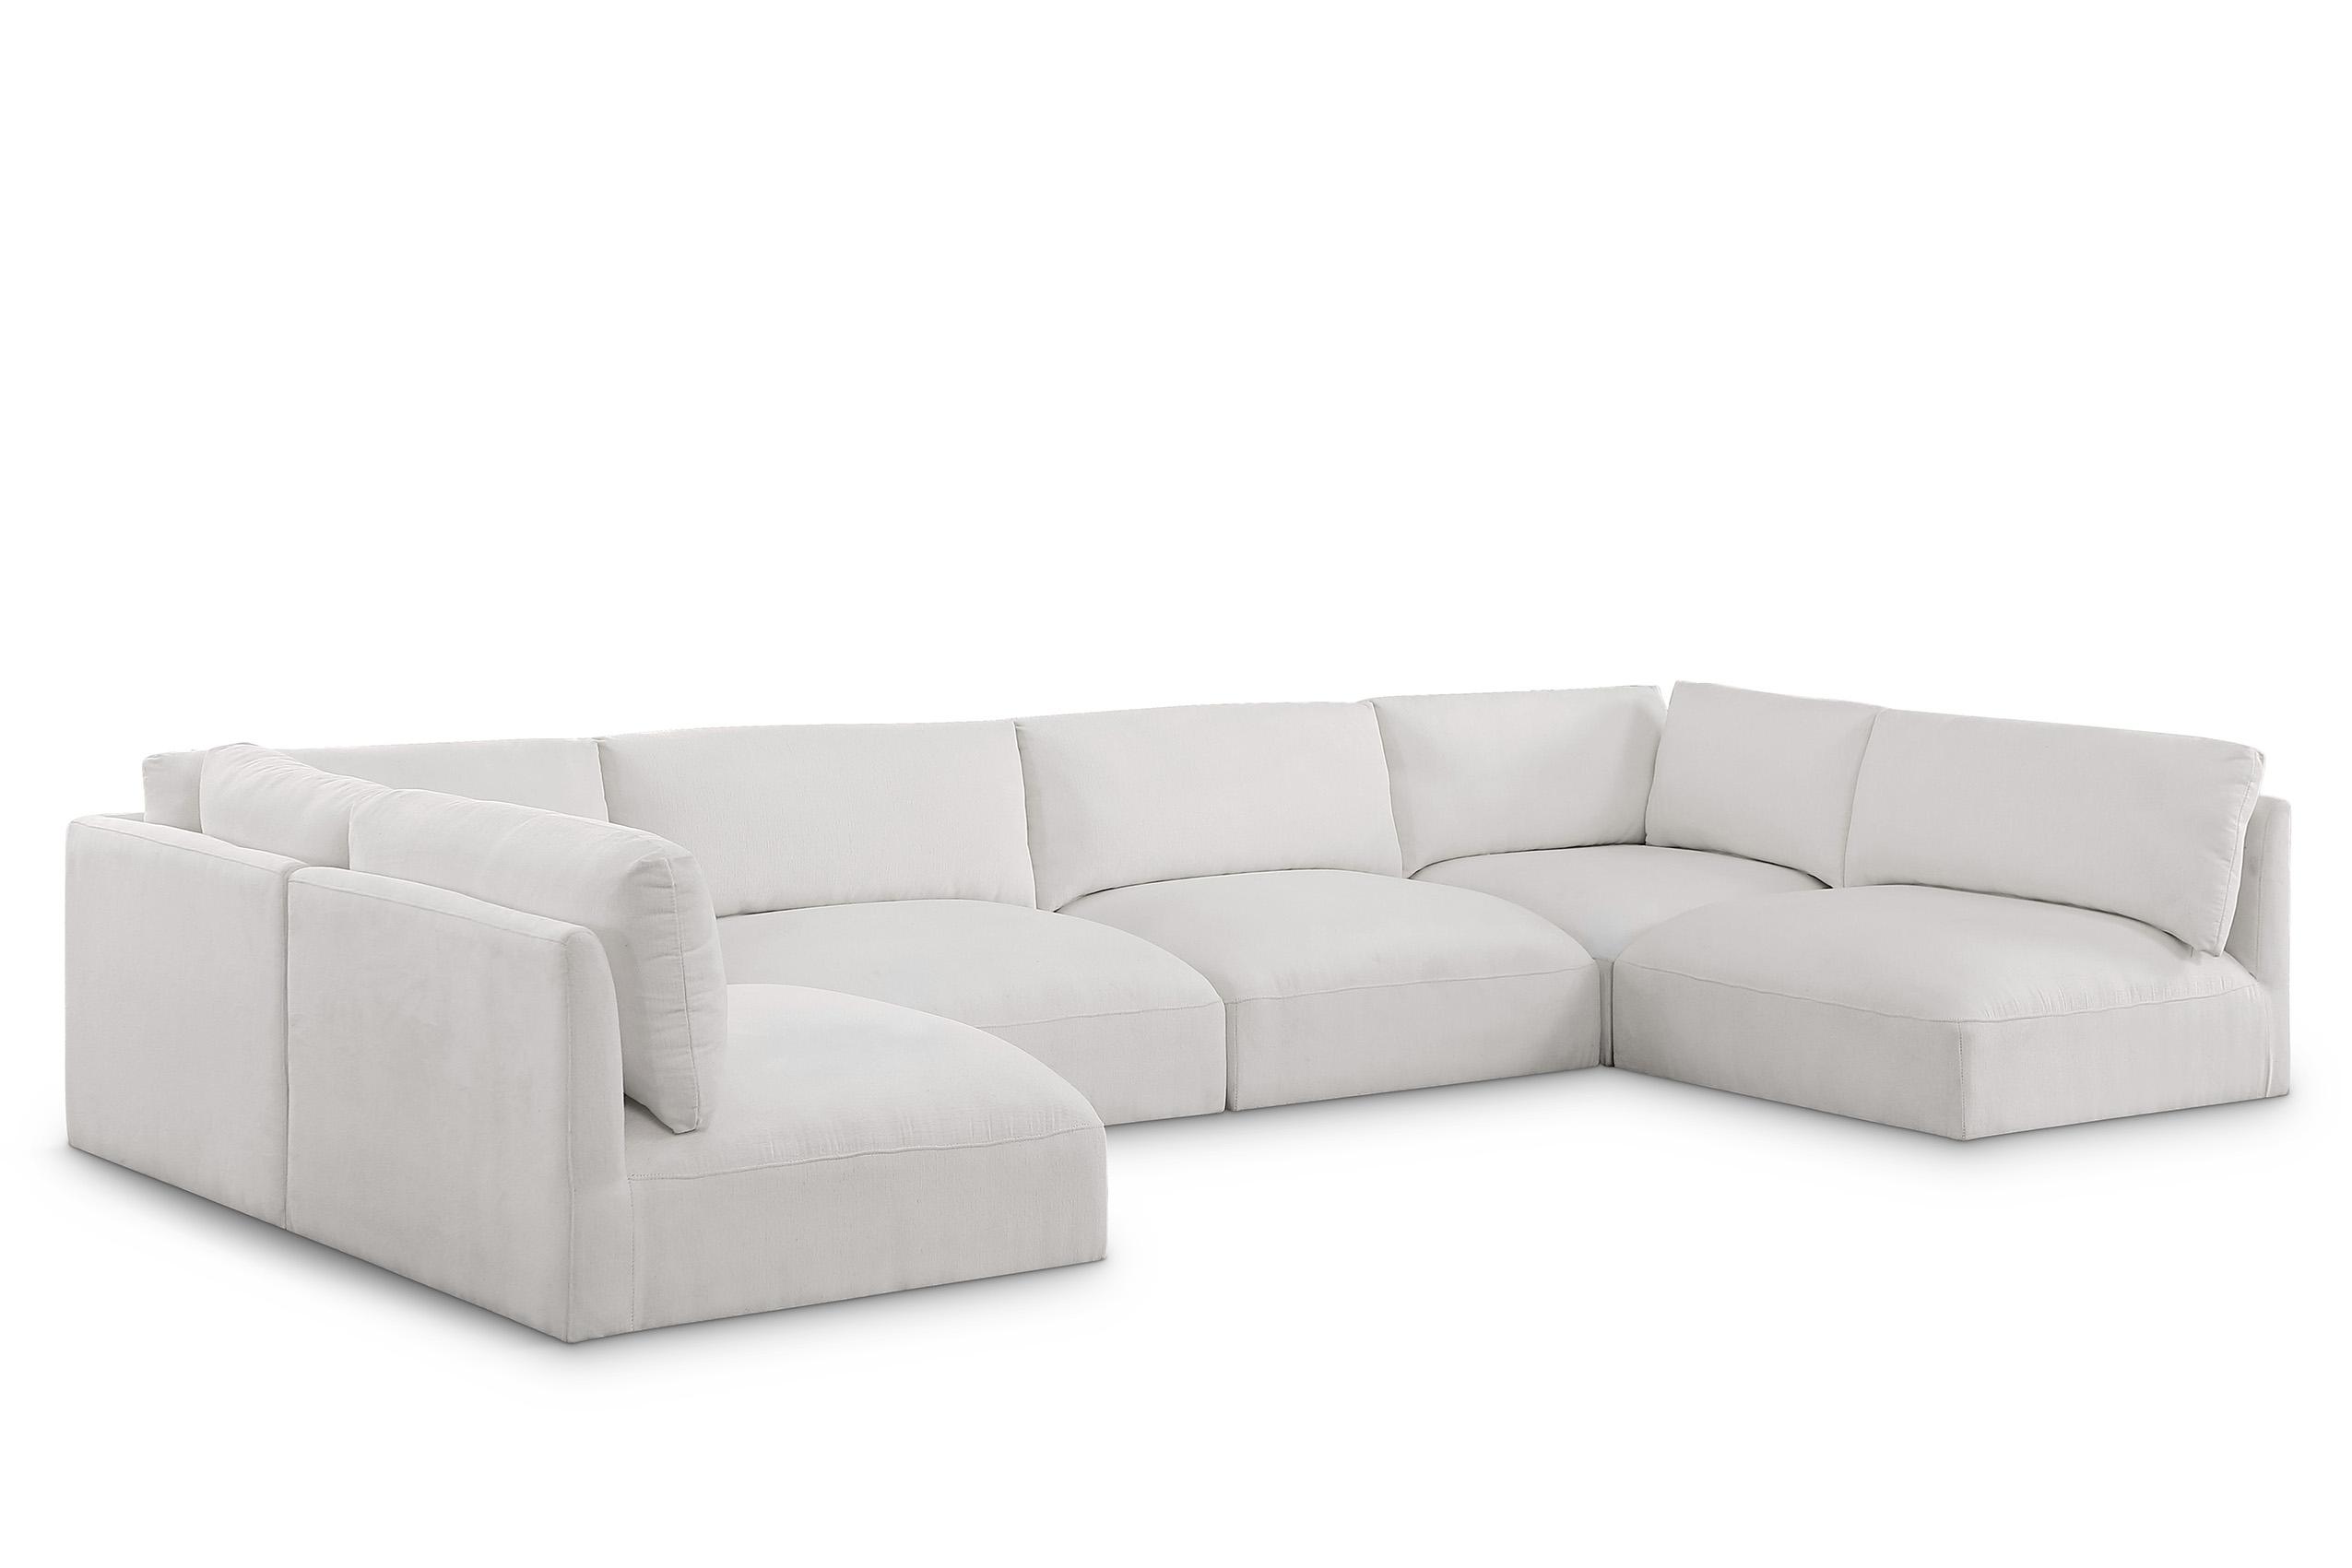 Contemporary, Modern Modular Sectional Sofa EASE 696Cream-Sec6A 696Cream-Sec6A in Cream Fabric